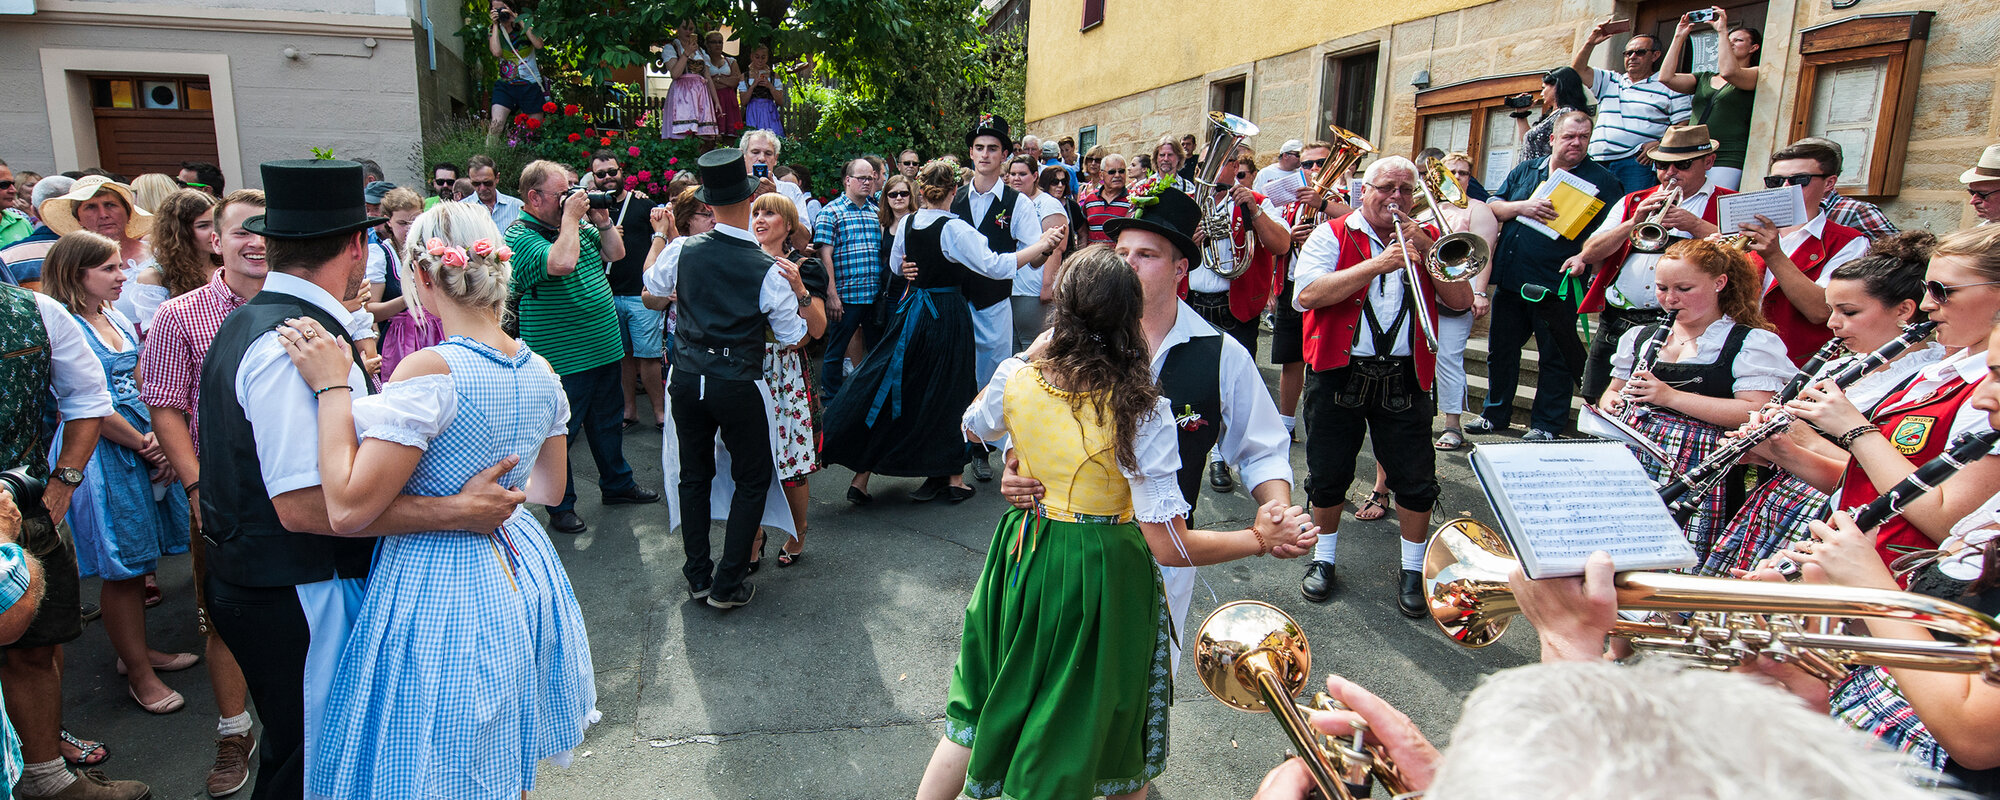 Am Dorfplatz feiert eine große Gruppe von Menschen, die teilweise fränkische Tracht tragen. Eine Musikkapelle mit roten Westen spielt.